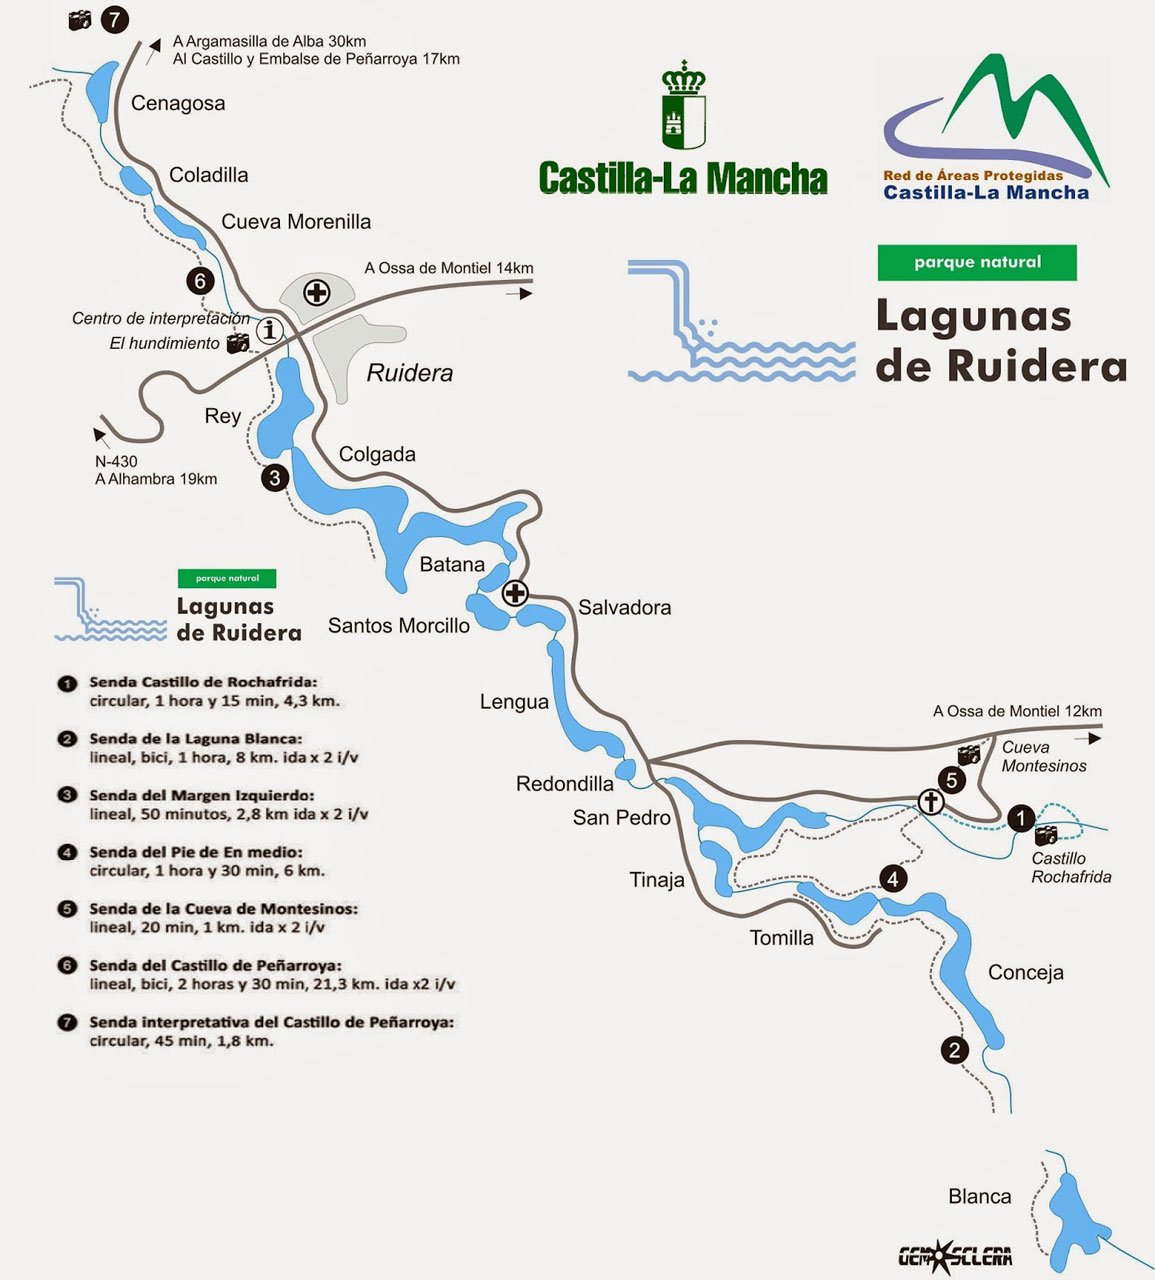 Mapa de las Lagunas de Ruidera en Castilla la Mancha